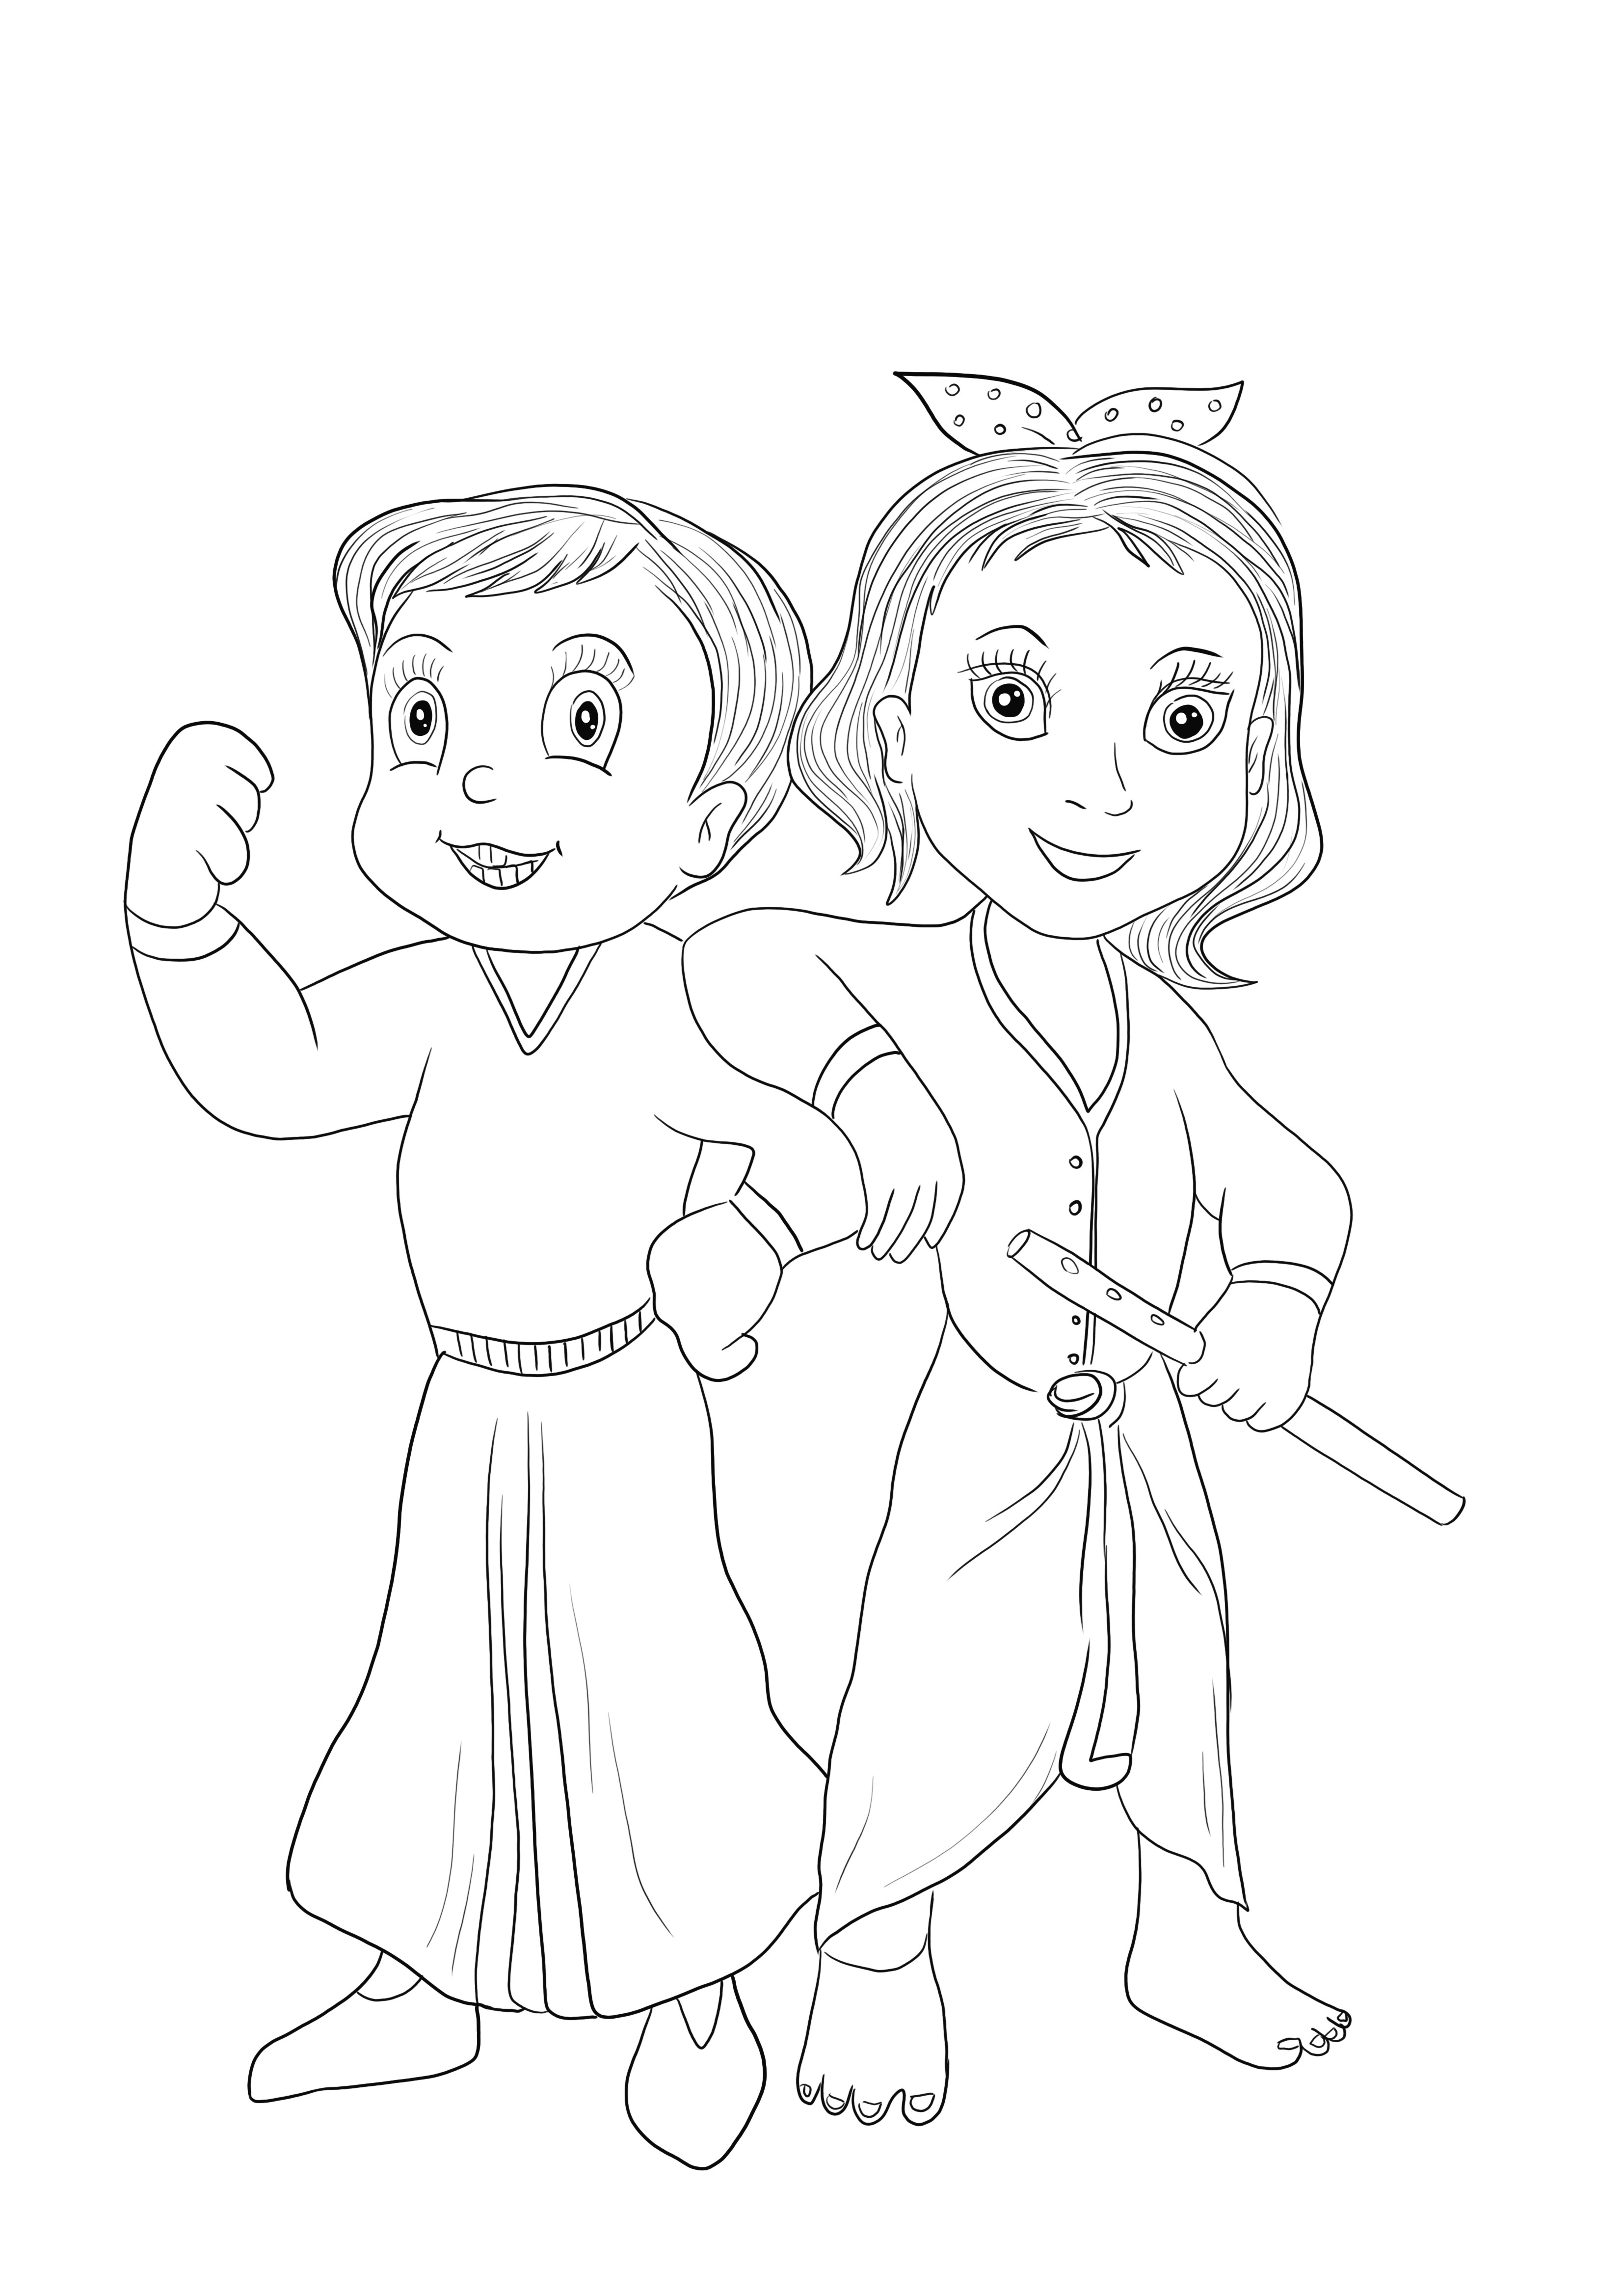 Chhota Bheem și Krishna din jocul Chota Bheem gratuit de descărcat și ușor de colorat